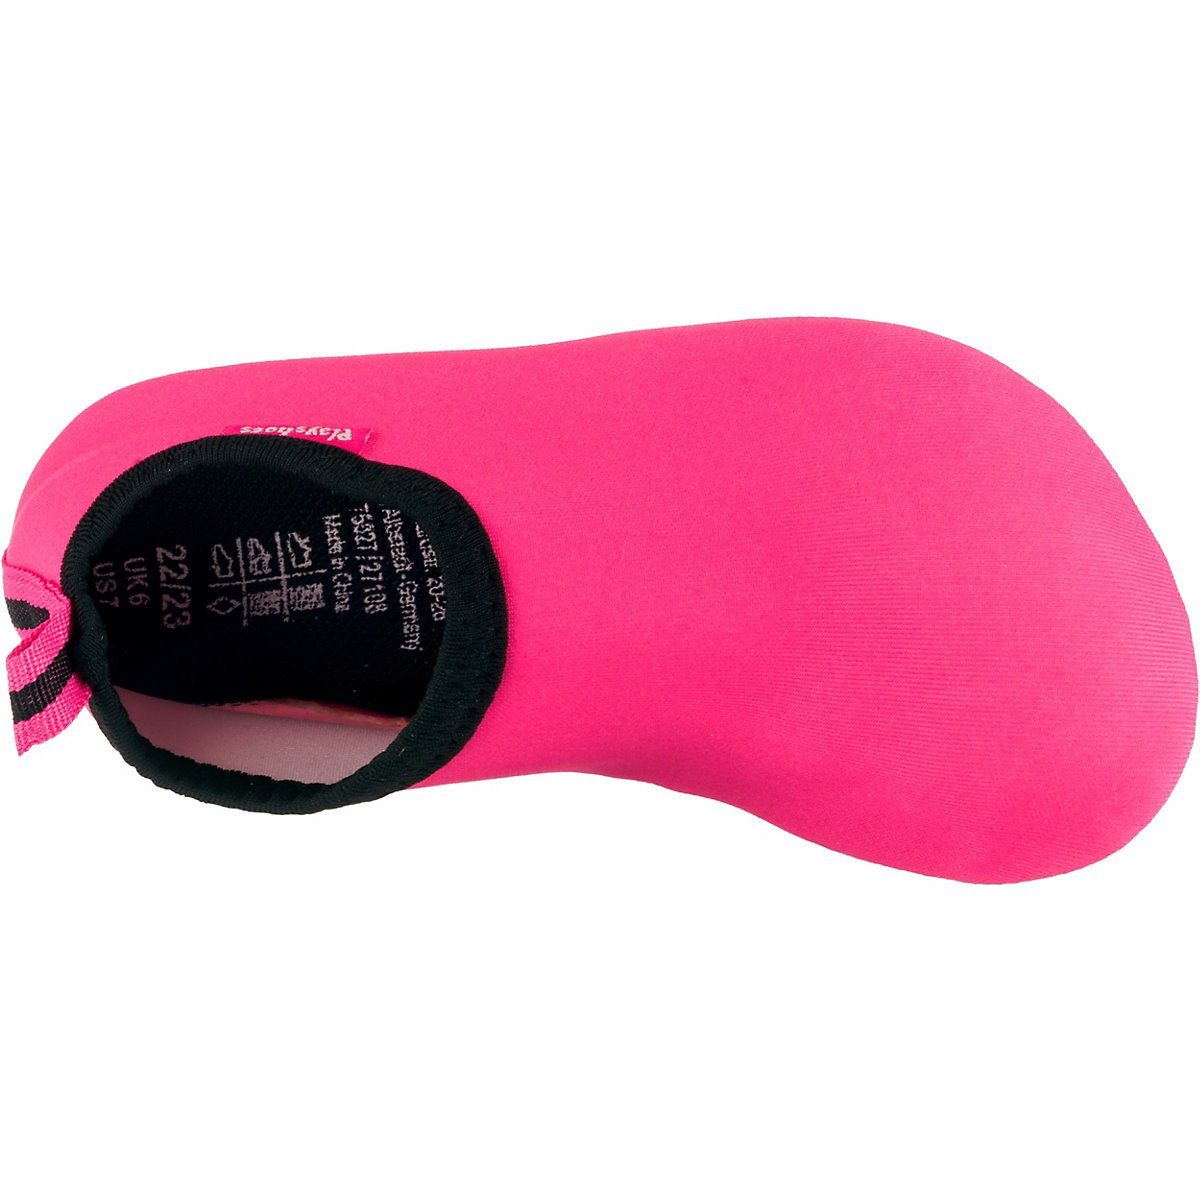 Barfuß-Schuh Badeschuh Schwimmschuhe, Uni Playshoes mit rutschhemmender Wasserschuhe Badeschuhe Passform, Sohle rosa flexible